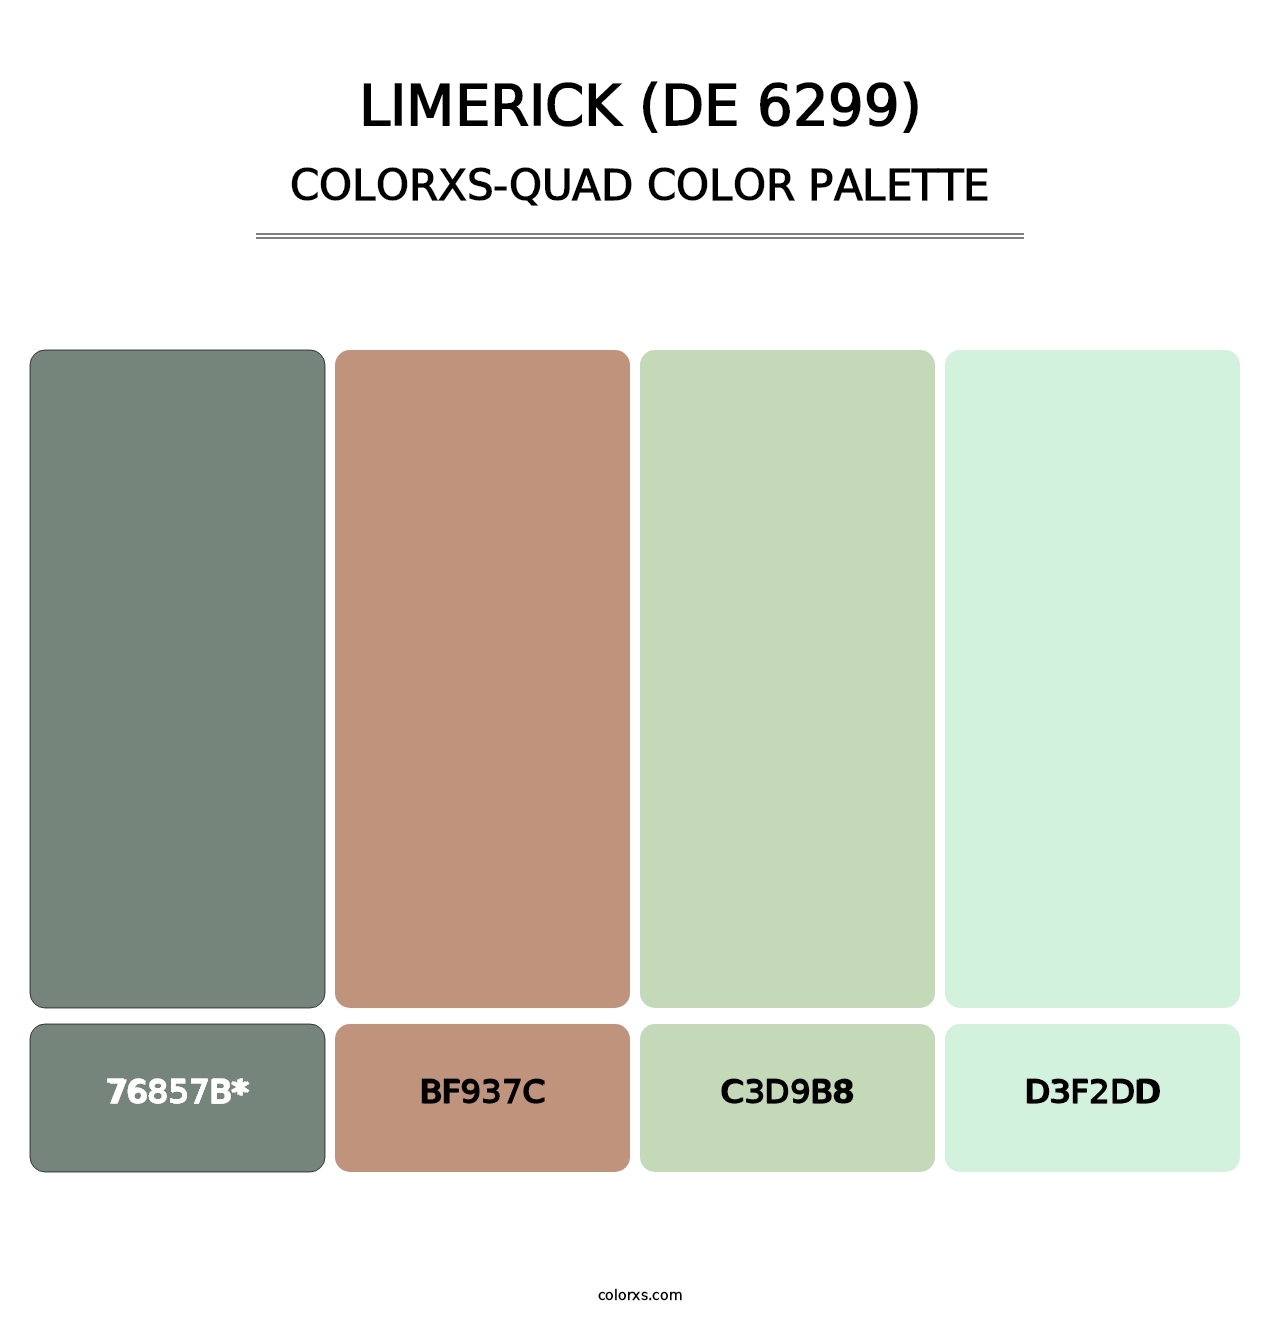 Limerick (DE 6299) - Colorxs Quad Palette